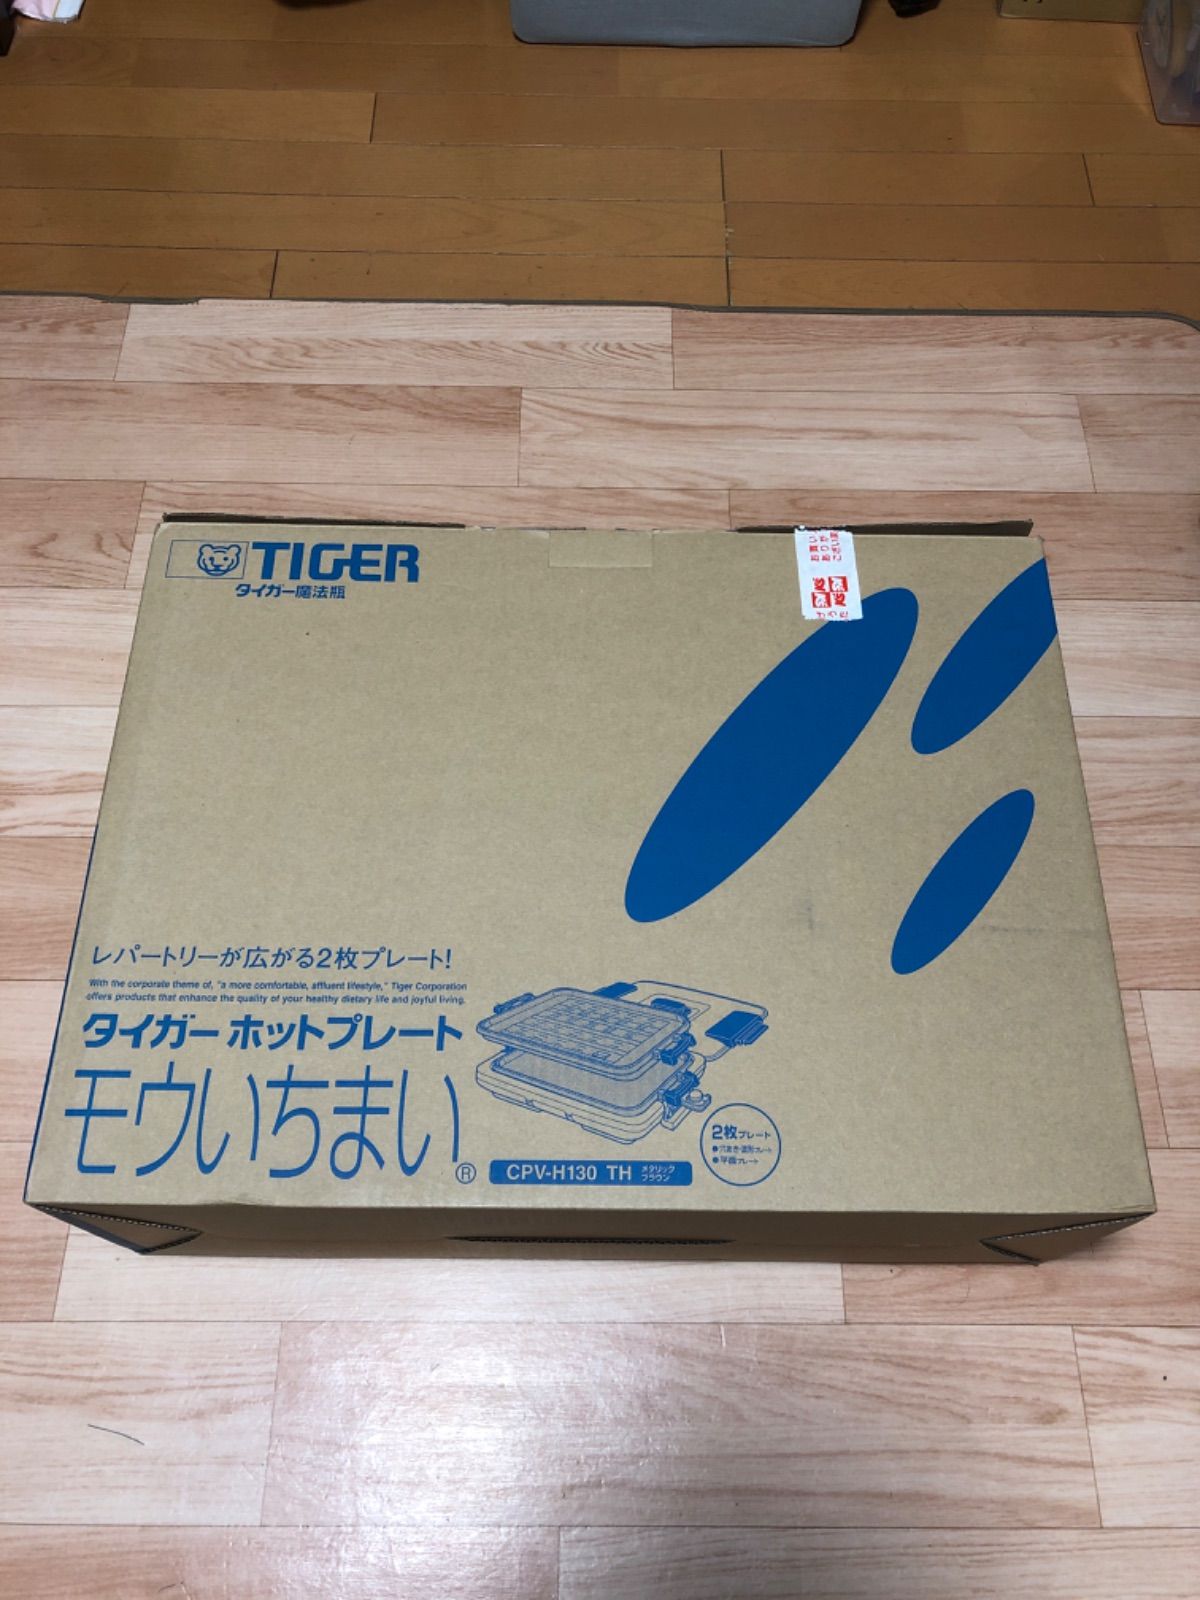 タイガー ホットプレート モウいちまい【CPV-H130 THメタリック